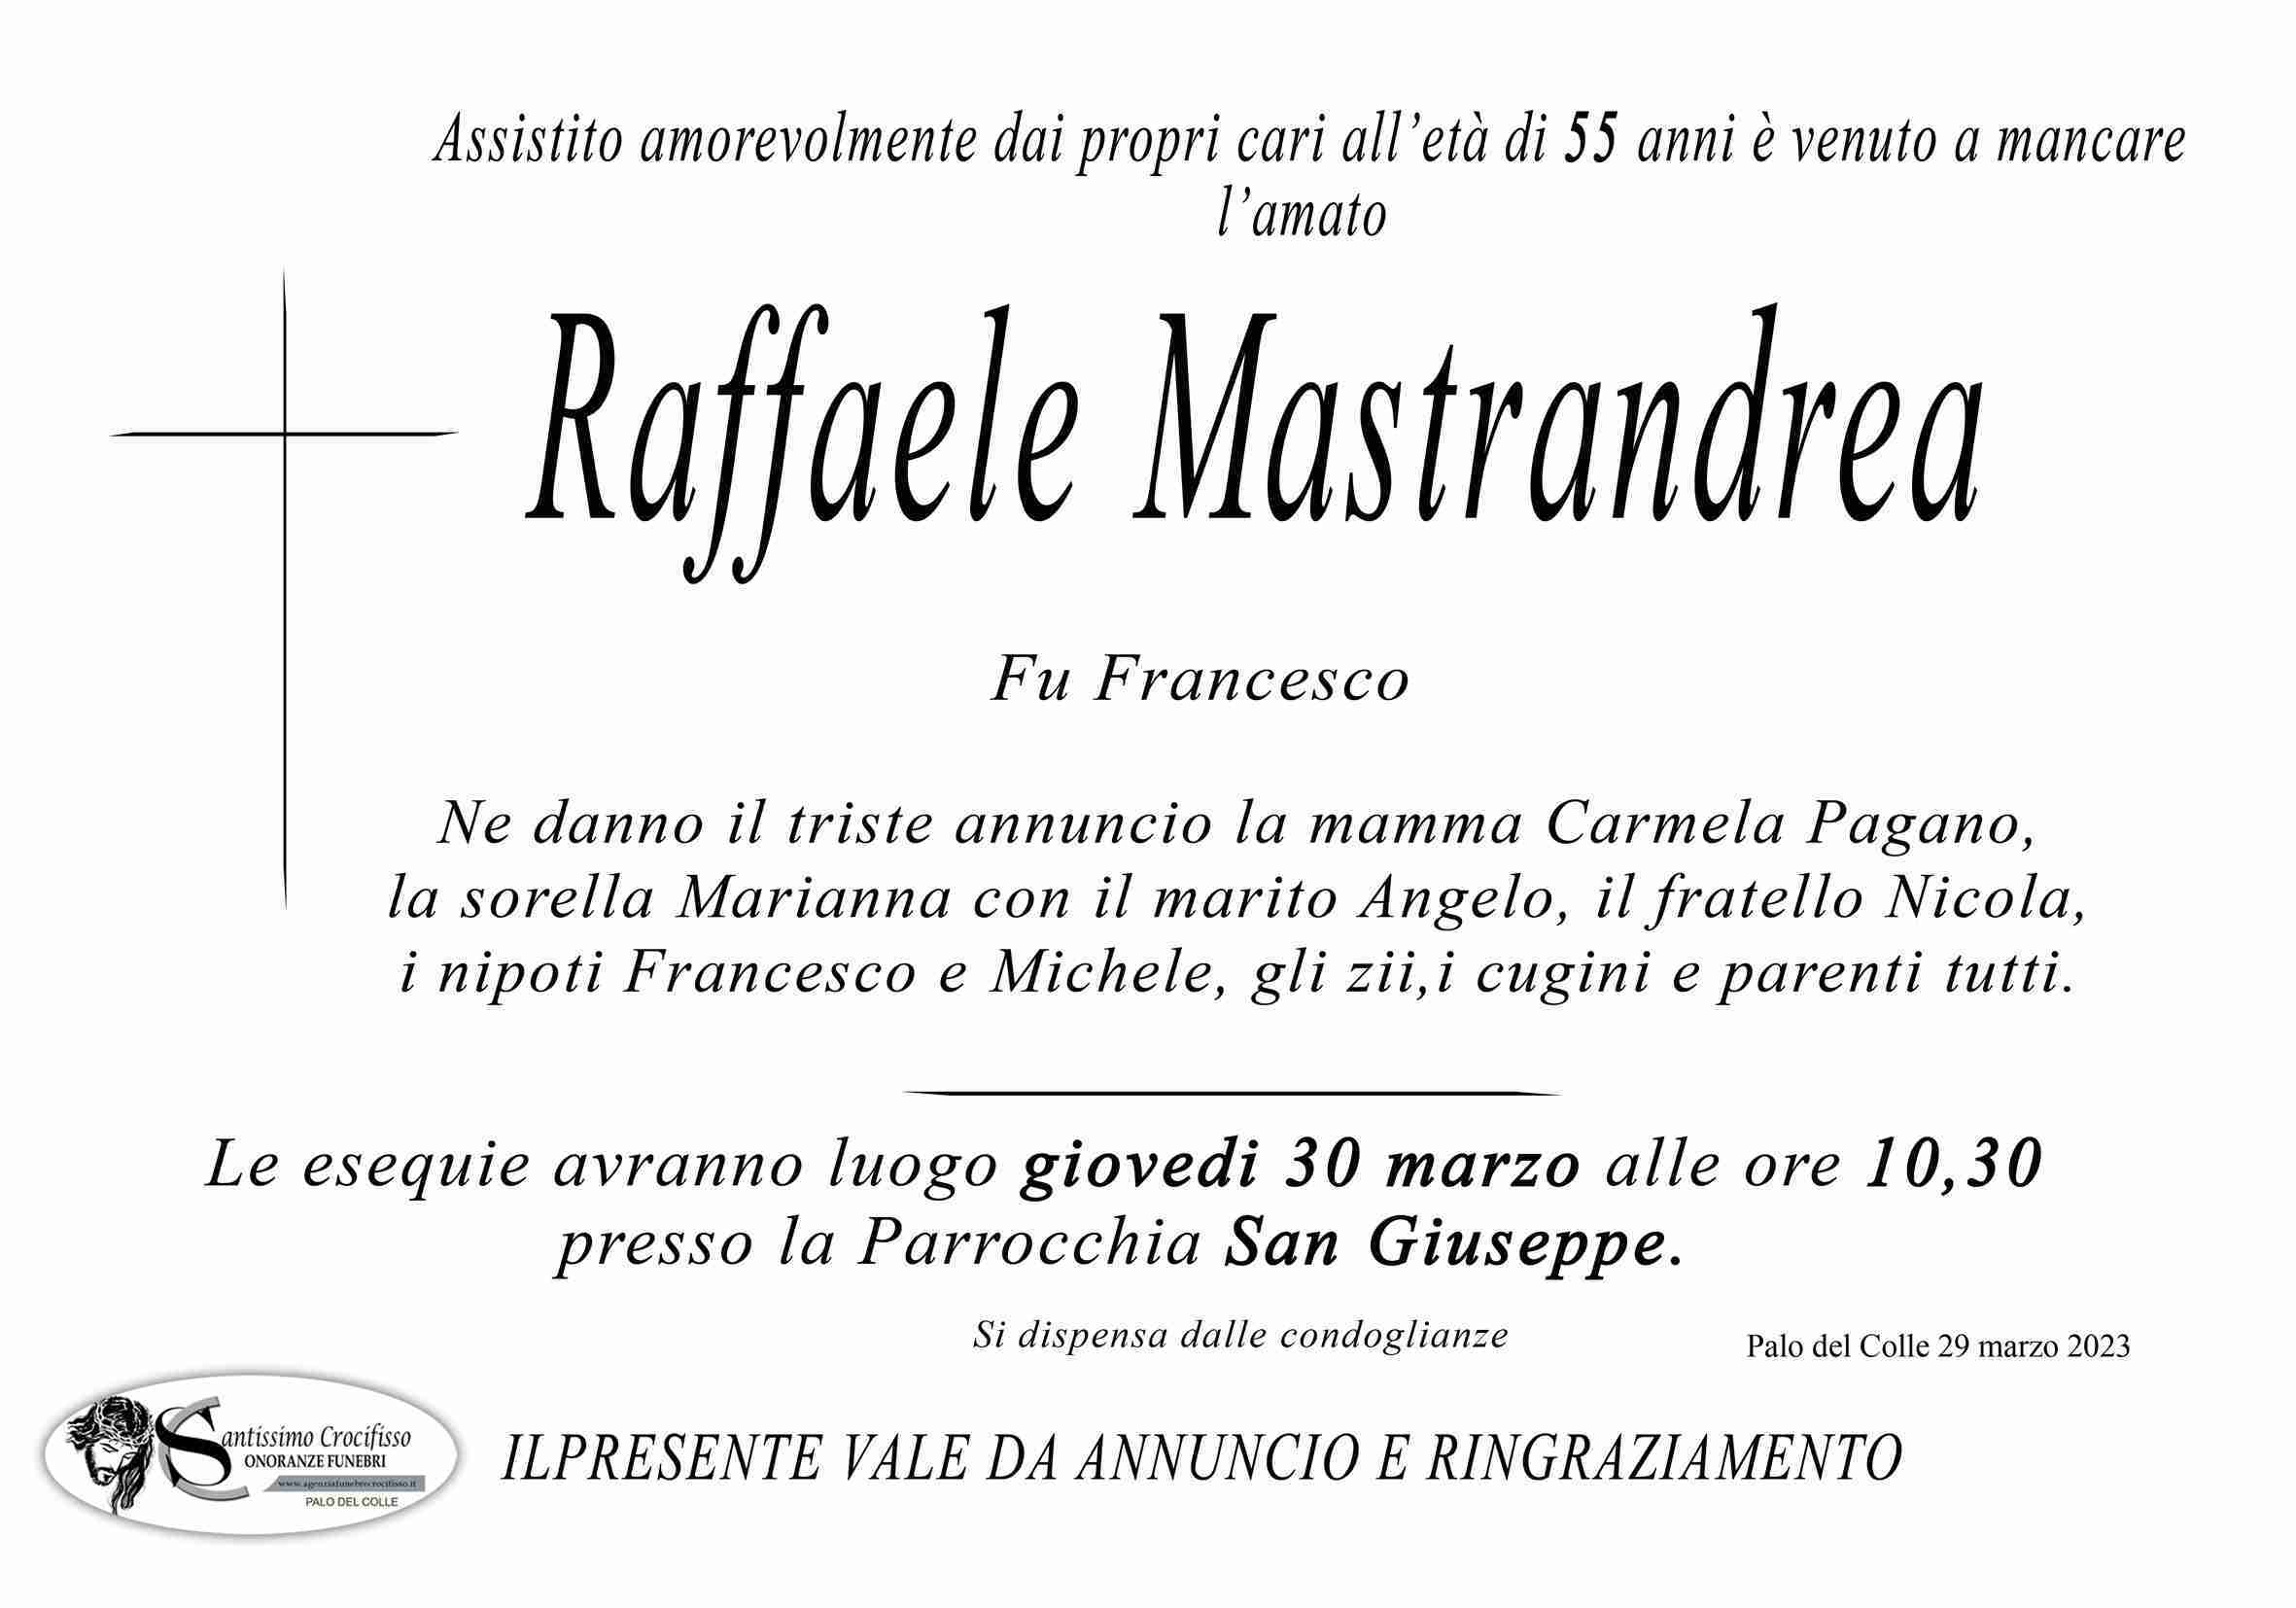 Raffaele Mastrandrea